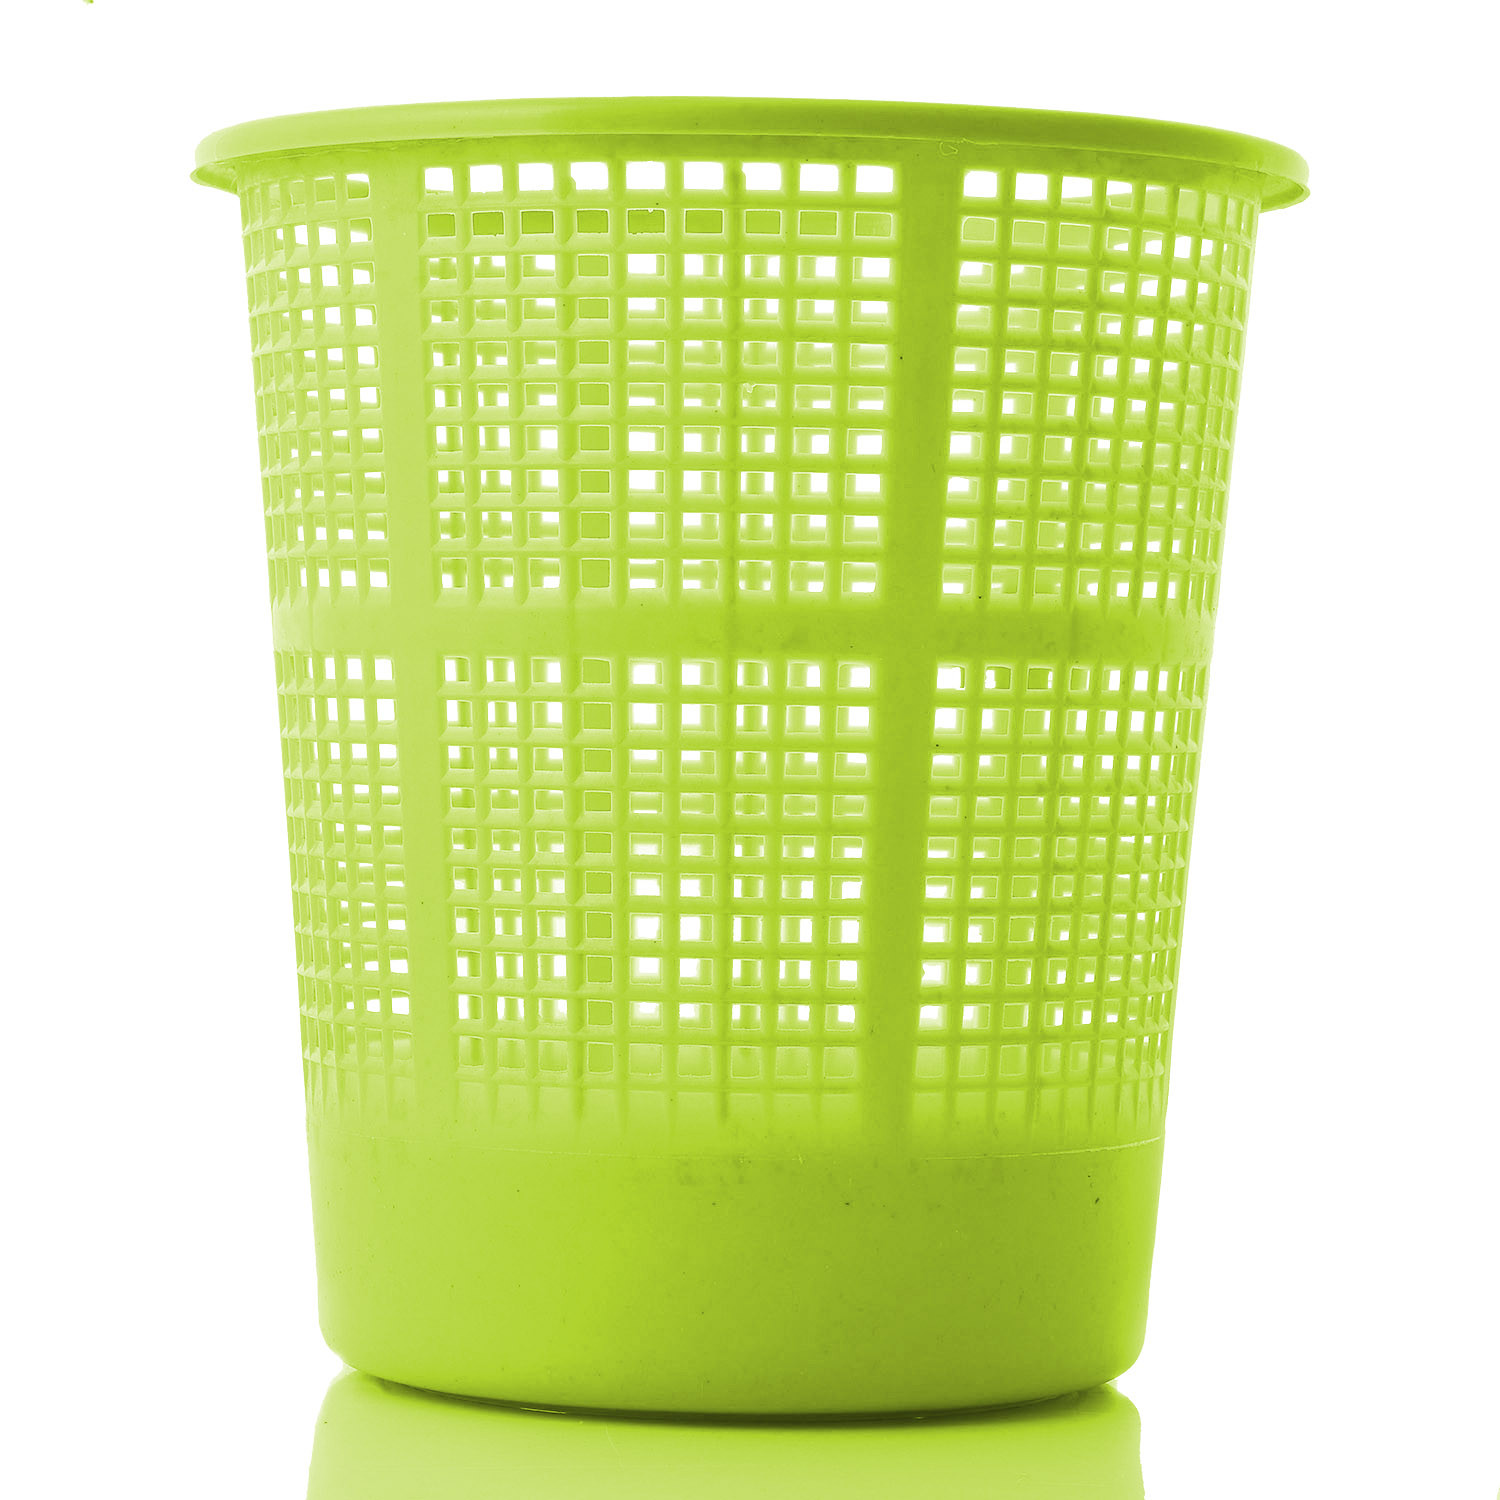 Kuber Industries Plastic Mesh Dustbin Garbage Bin for Office use, School, Bedroom,Kids Room, Home, Multi Purpose,5 Liters (Green & Red)-KUBMART268